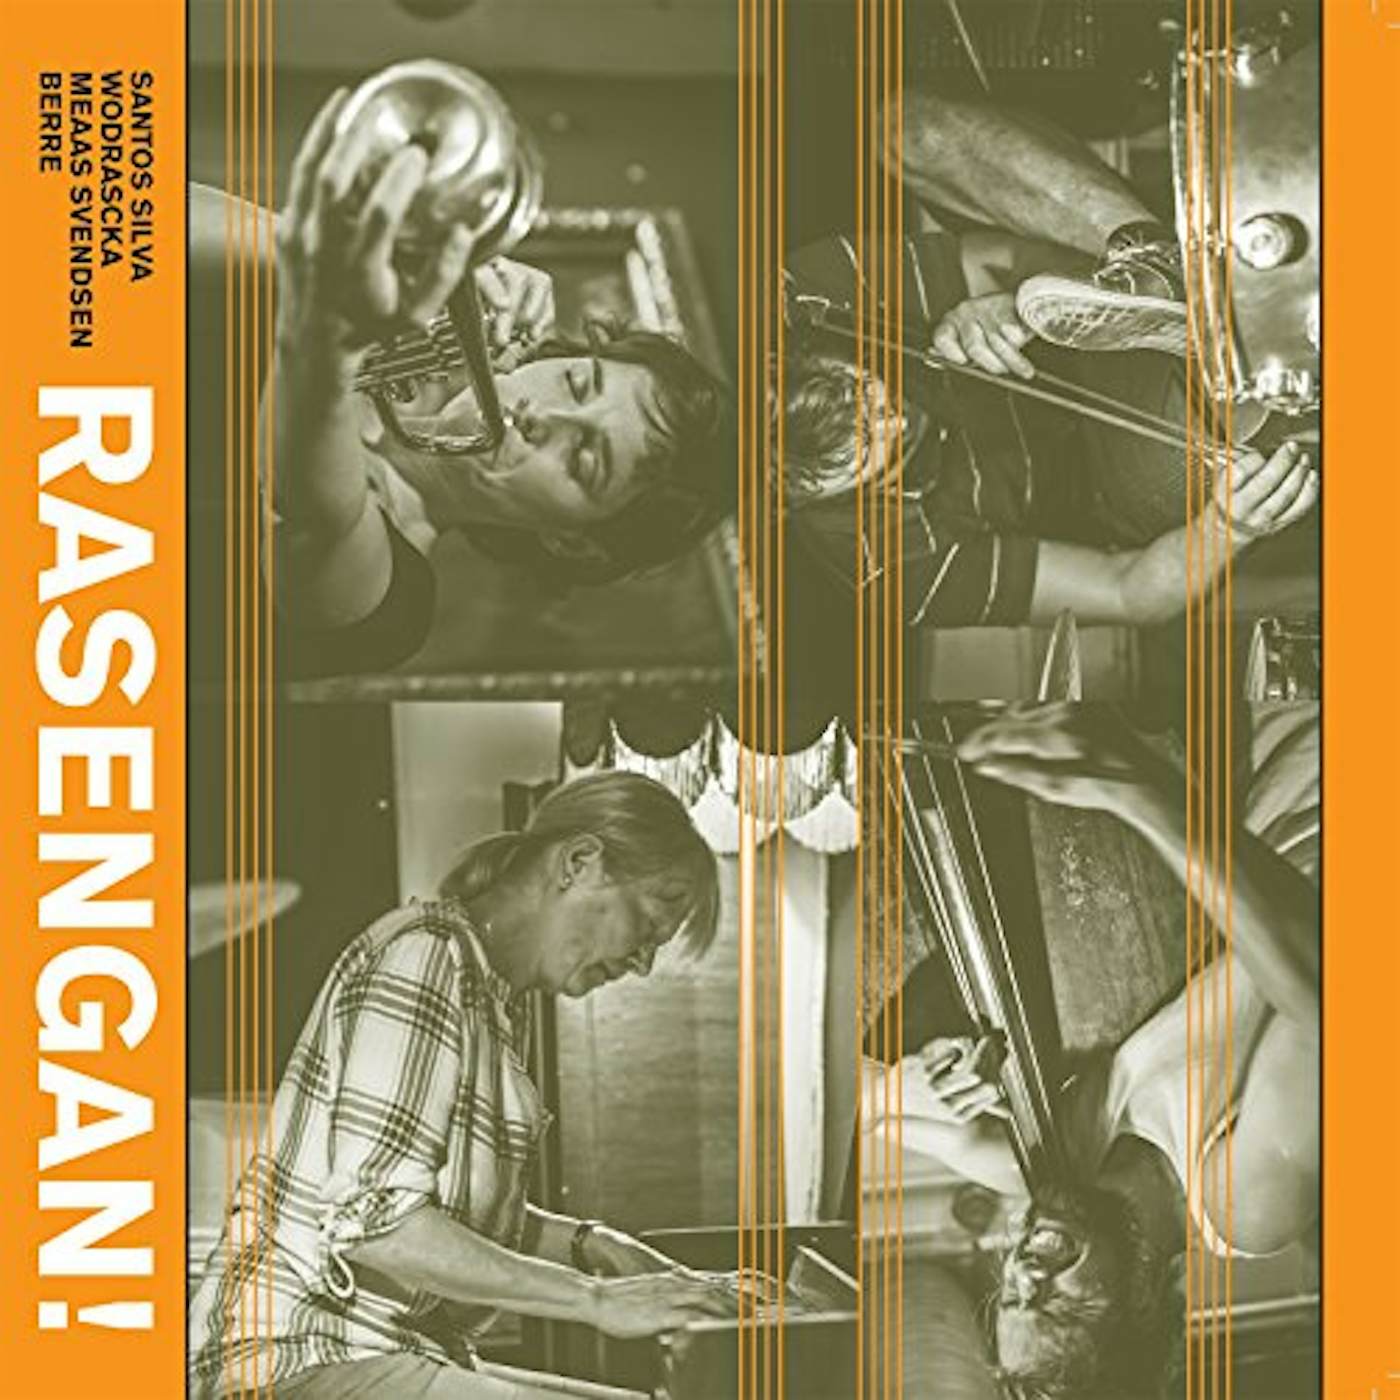 Santos Silva / Rasengan RASENGAN Vinyl Record